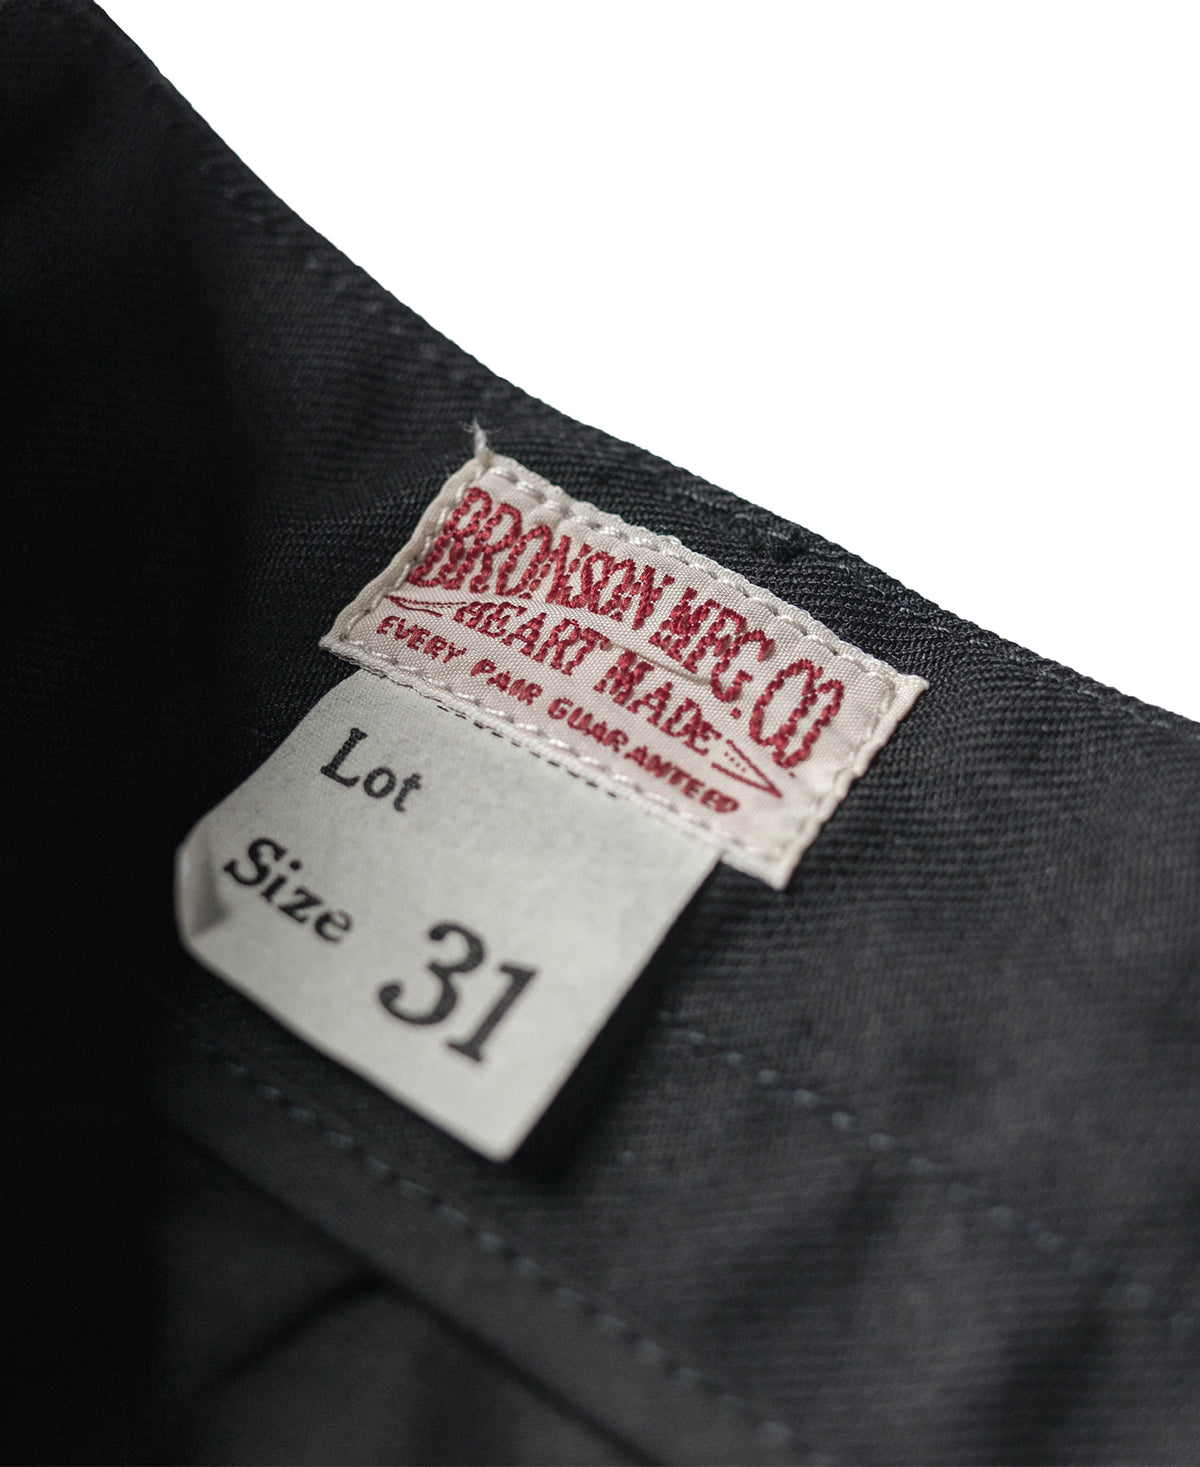 Lot 962 1960s 15 oz Cotton Double Pleated Pants